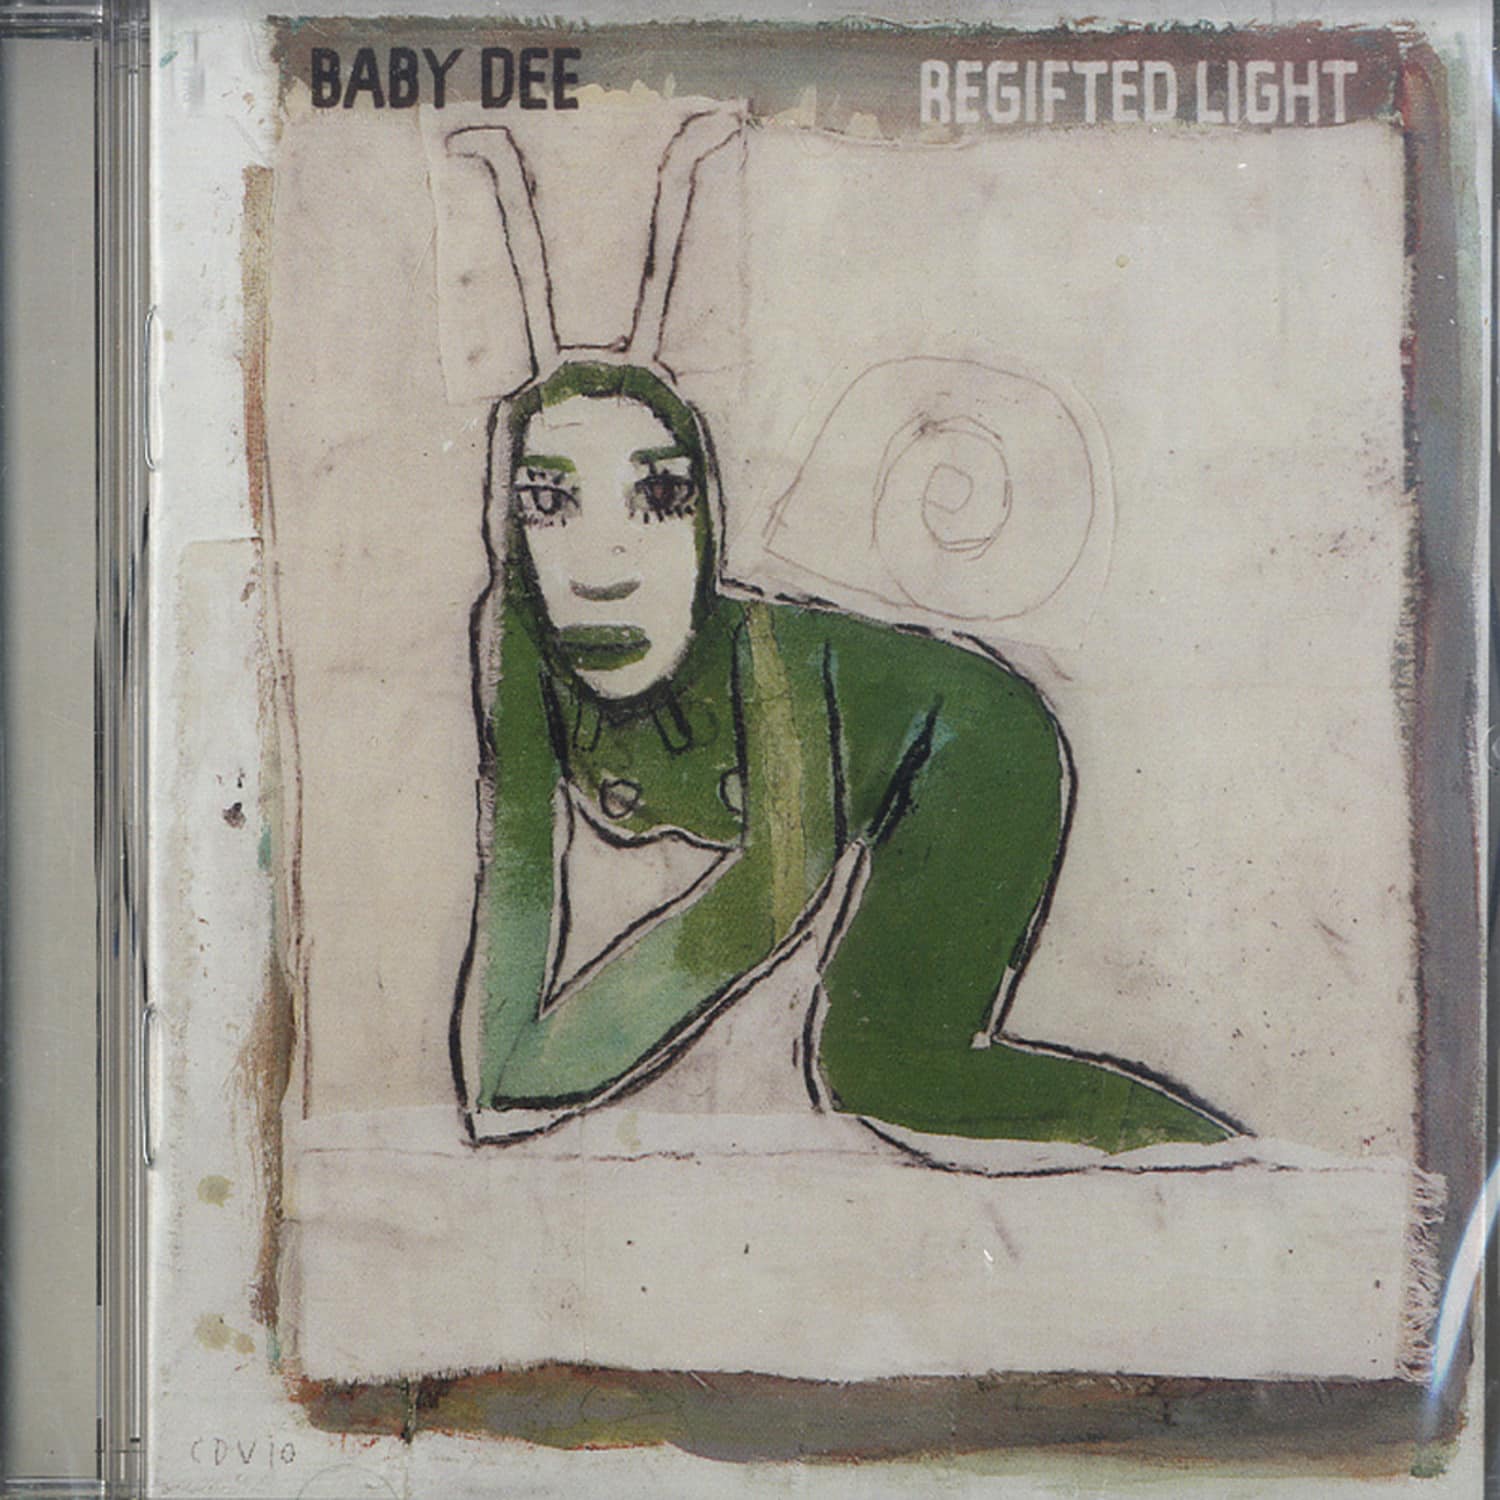 Baby Dee - REGIFTED LIGHT 